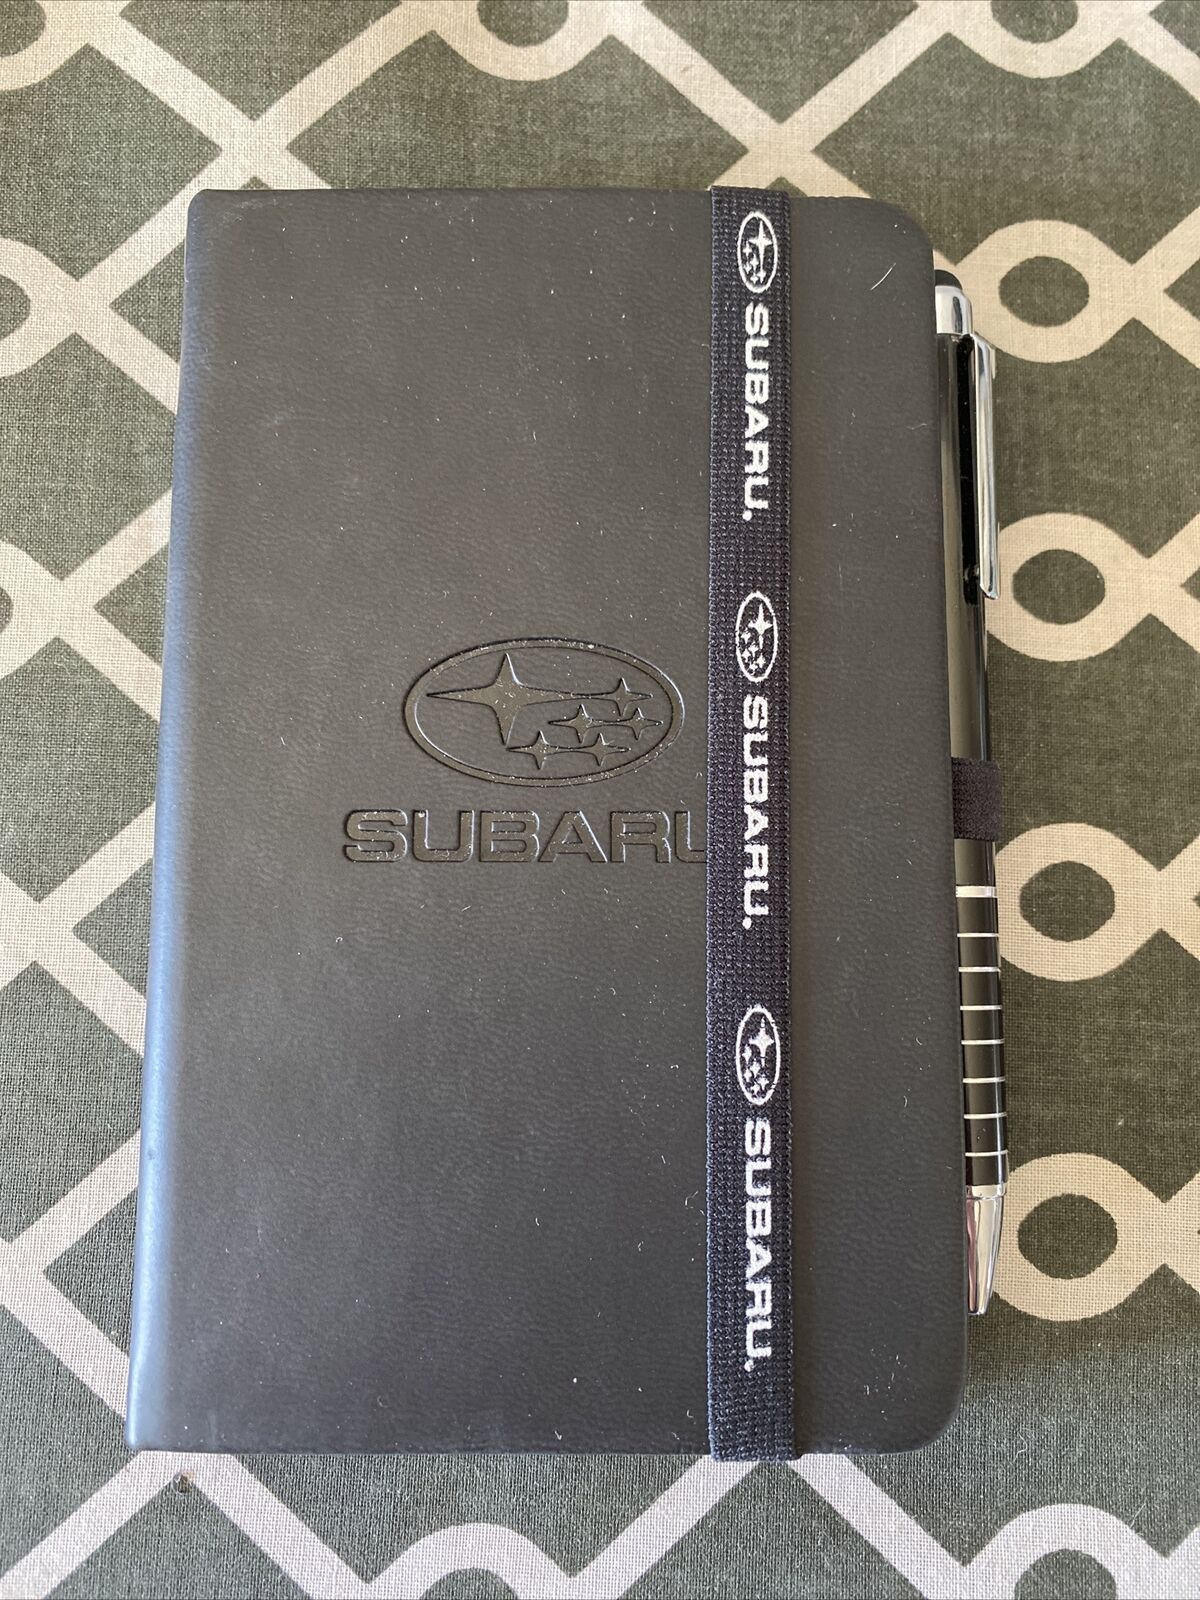 Subaru Love Encore Star Delivery Journal Note Book Pad & Pen, Blank Unused